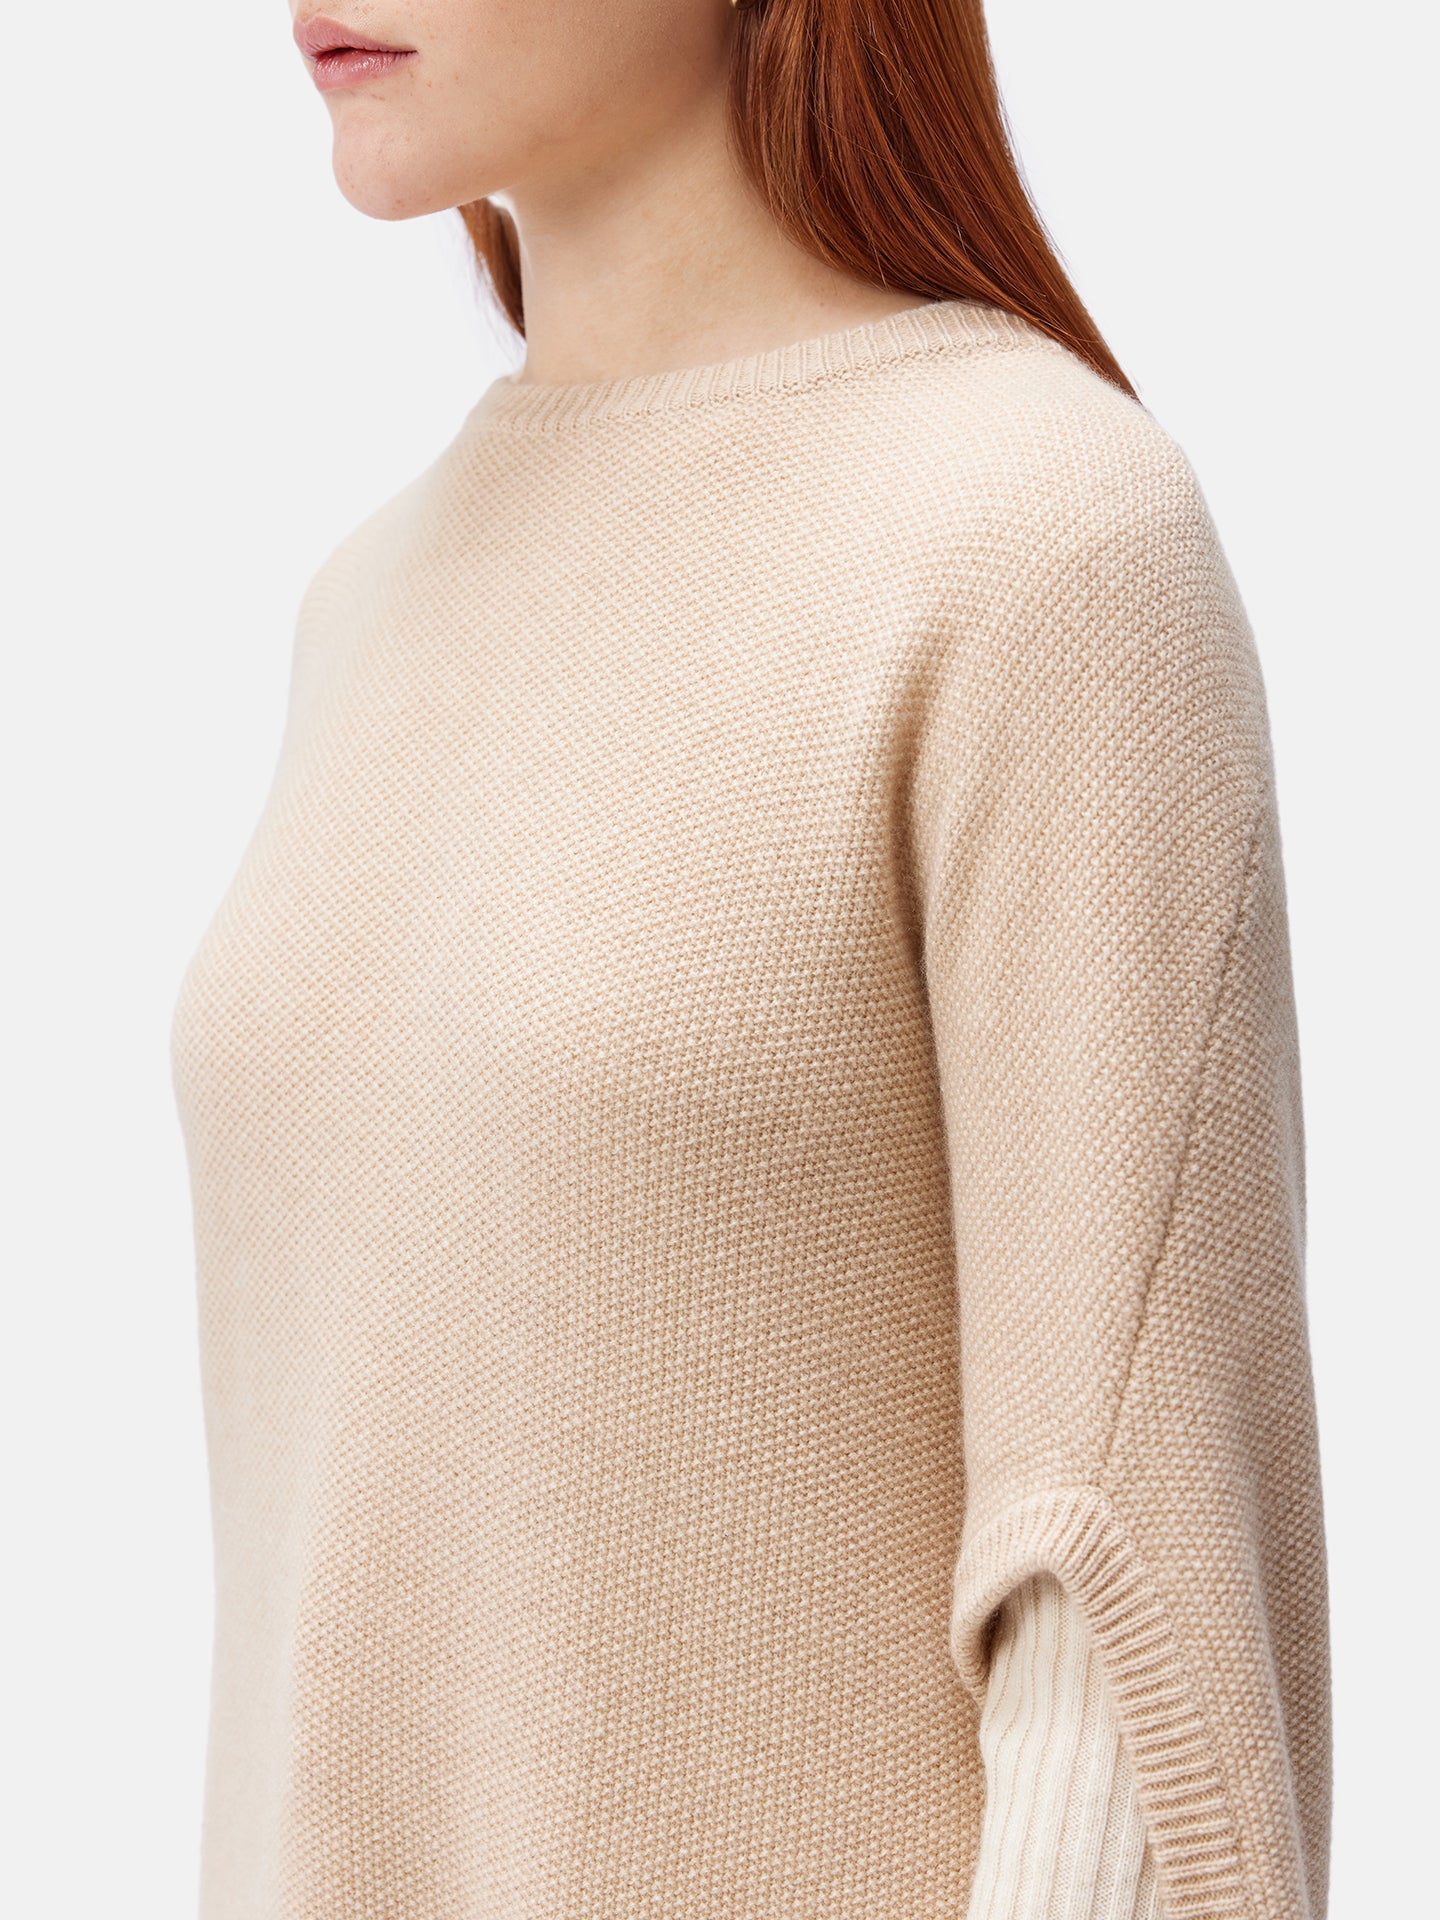 Women's Cashmere Cocoon Sweater Beige - Gobi Cashmere